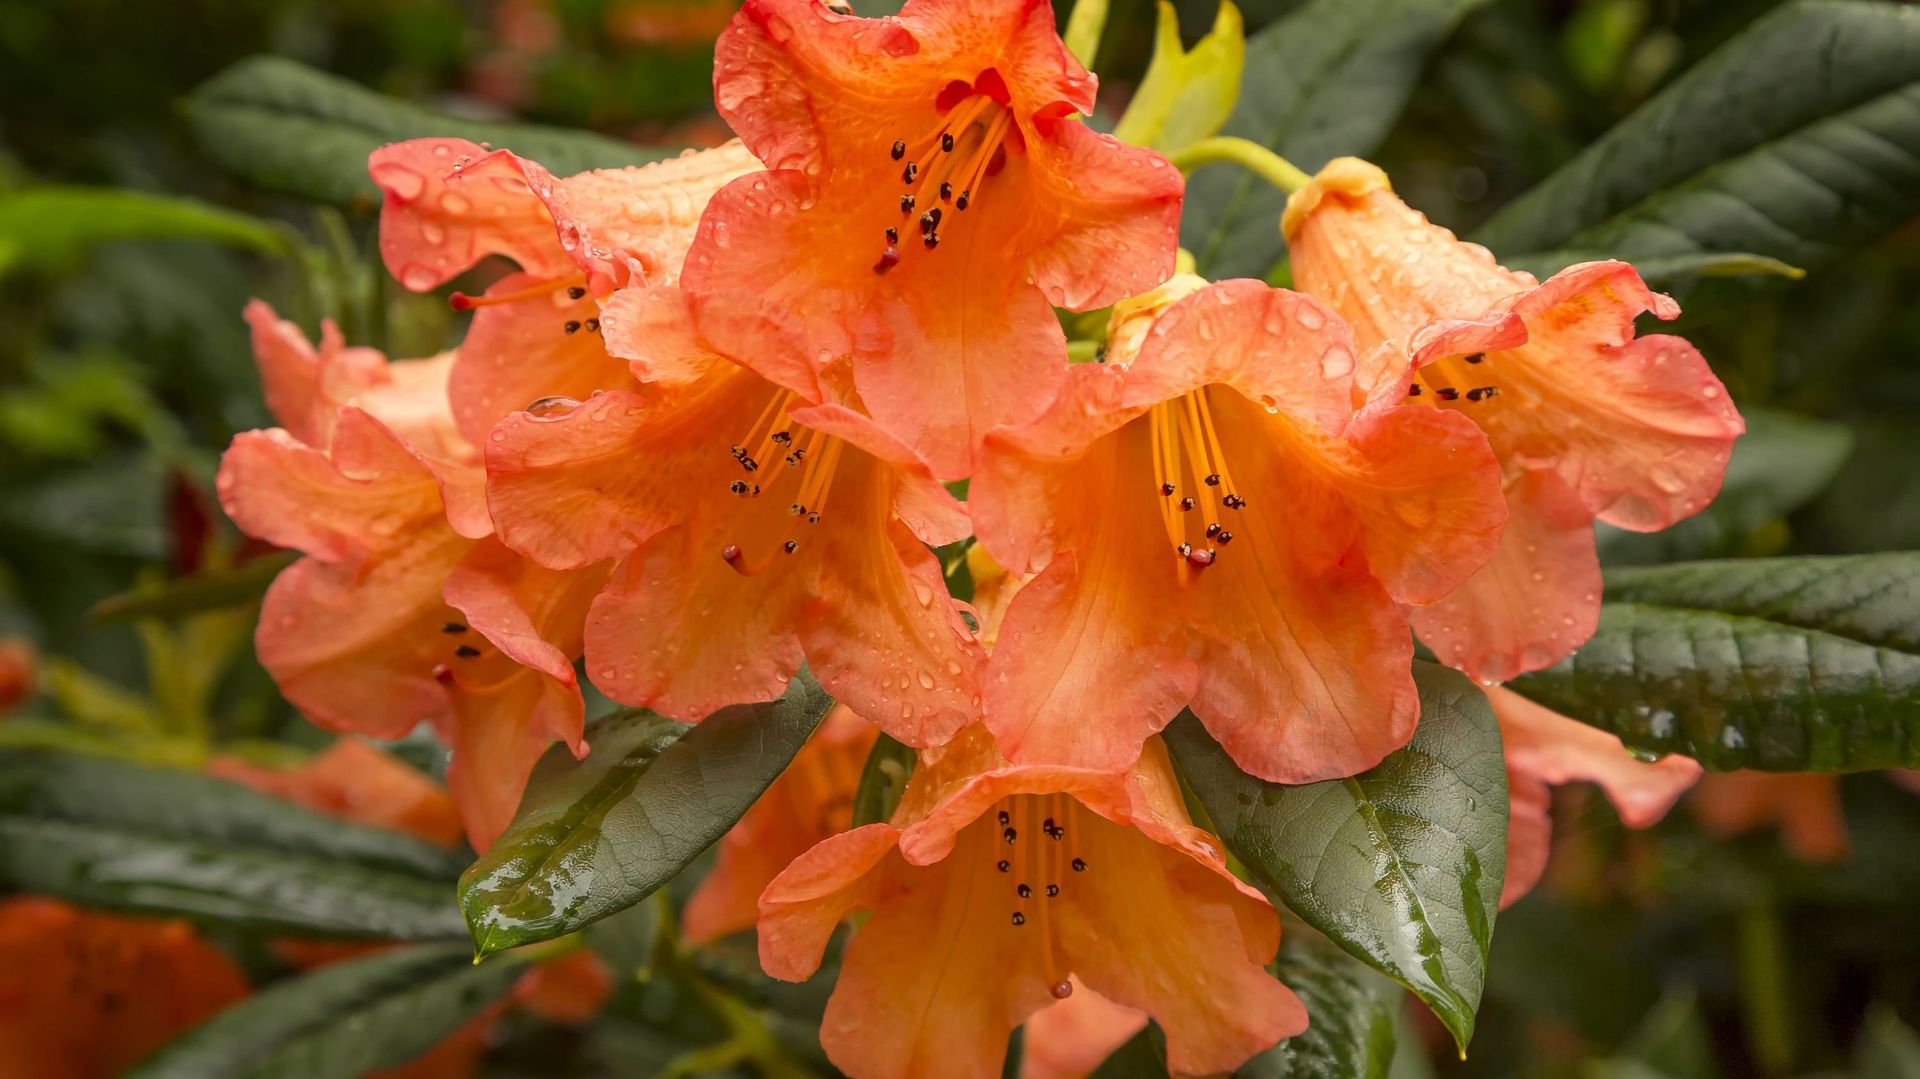 Le nom rhododendron vient du grec ancien formé de rhodon qui signifie "rose" et dendron pour "arbre". On peut donc le traduire par "arbre à roses"